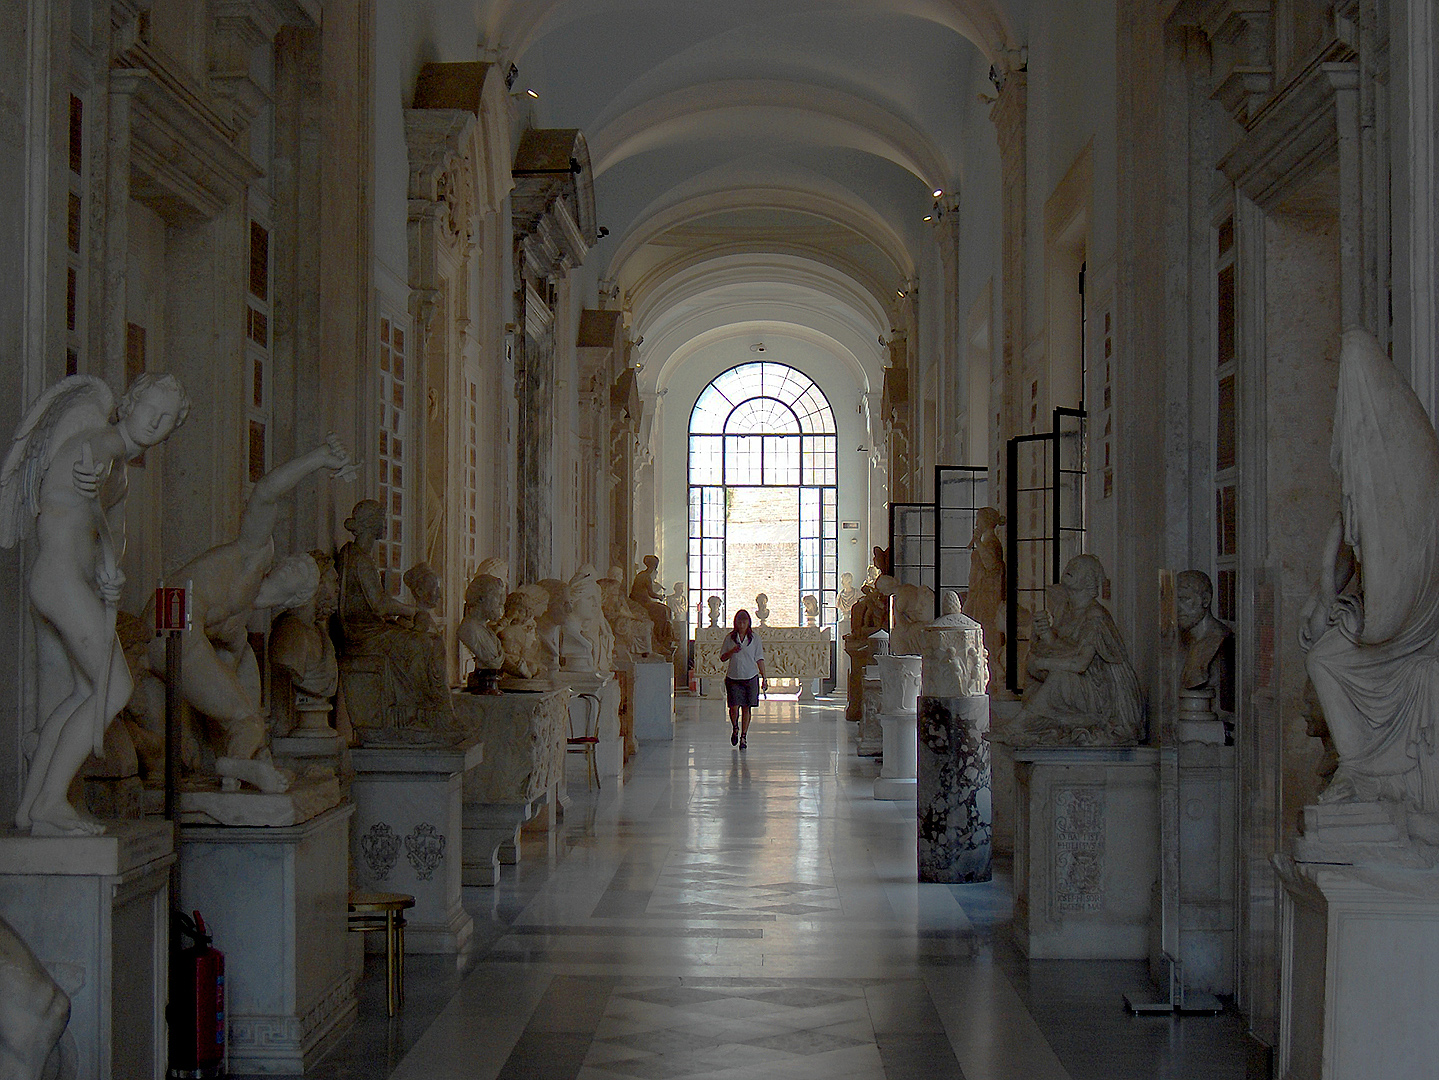 Galerij in het Capitolijns Museum in Rome; Gallery in the Capitoline Museum in Rome